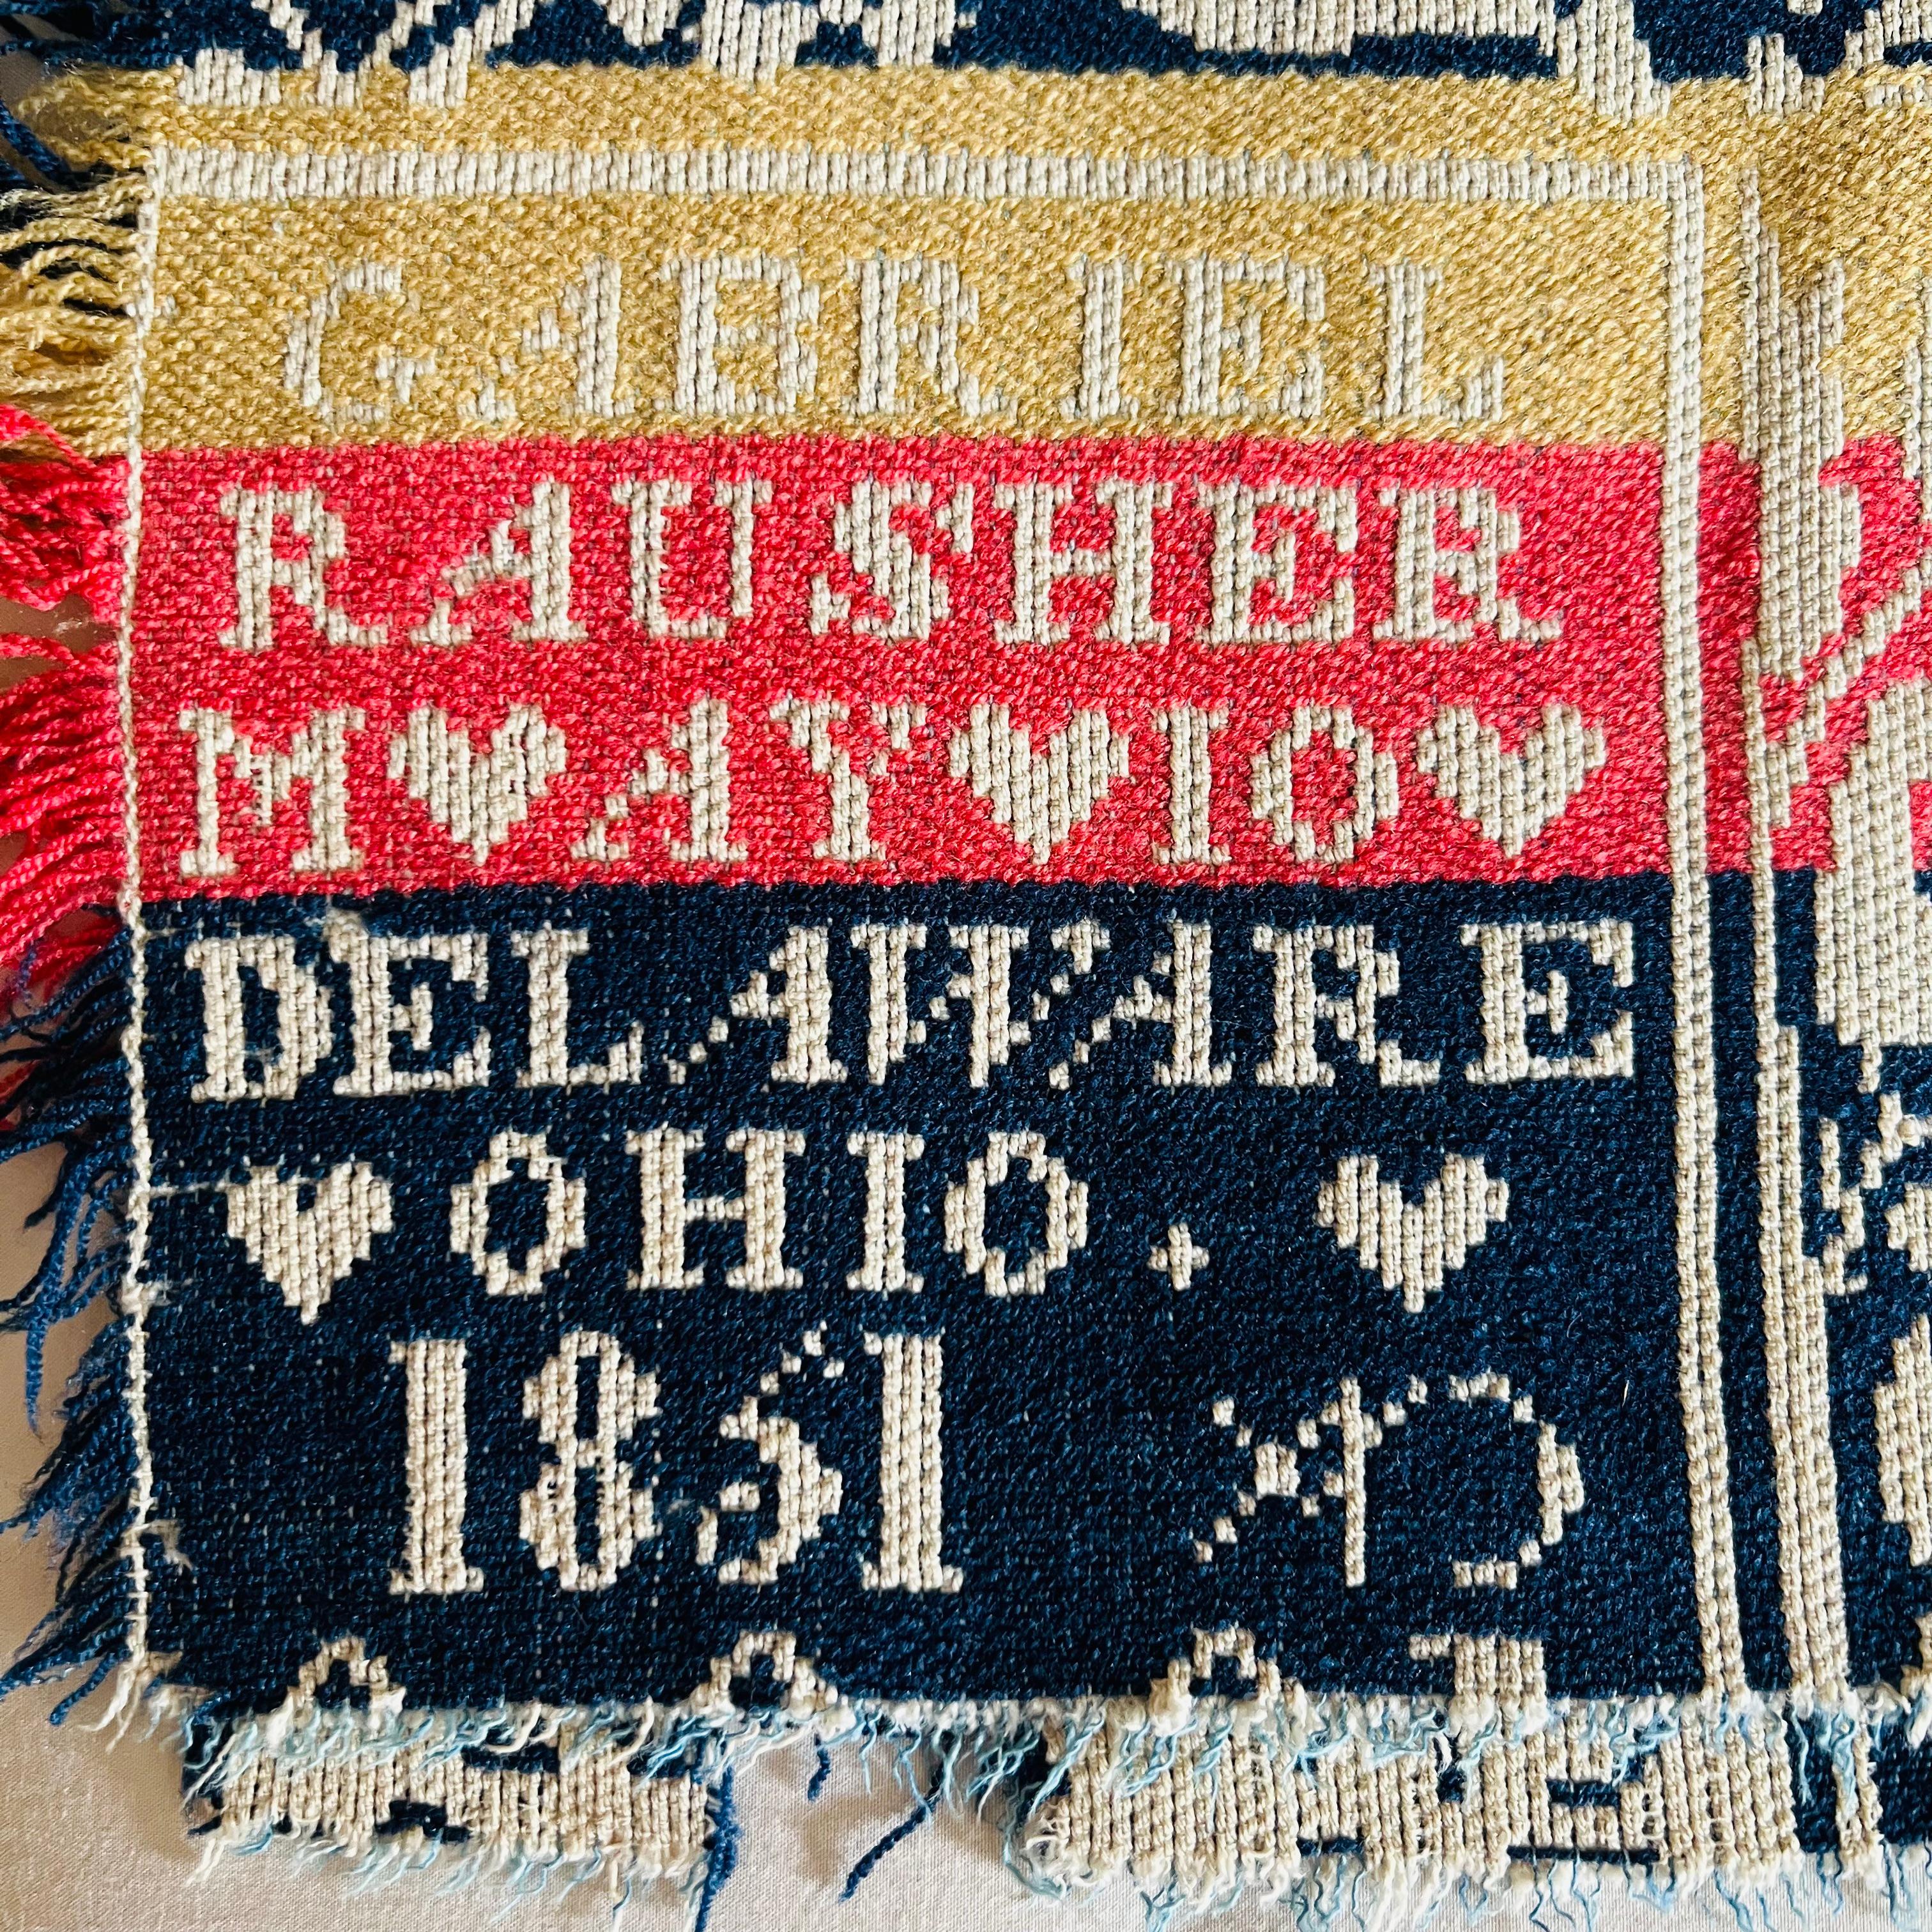 Ein geknüpftes Jacquard-Deckchen, handgewebt von Gabriel Rausher in Delaware, OH im Jahr 1851. Wolle und Baumwolle in leuchtendem Korallenrot, Gelb, zartem Creme und sattem Marineblau. Florales Medaillonmuster mit Vogeldetails.

Auf einem schmalen